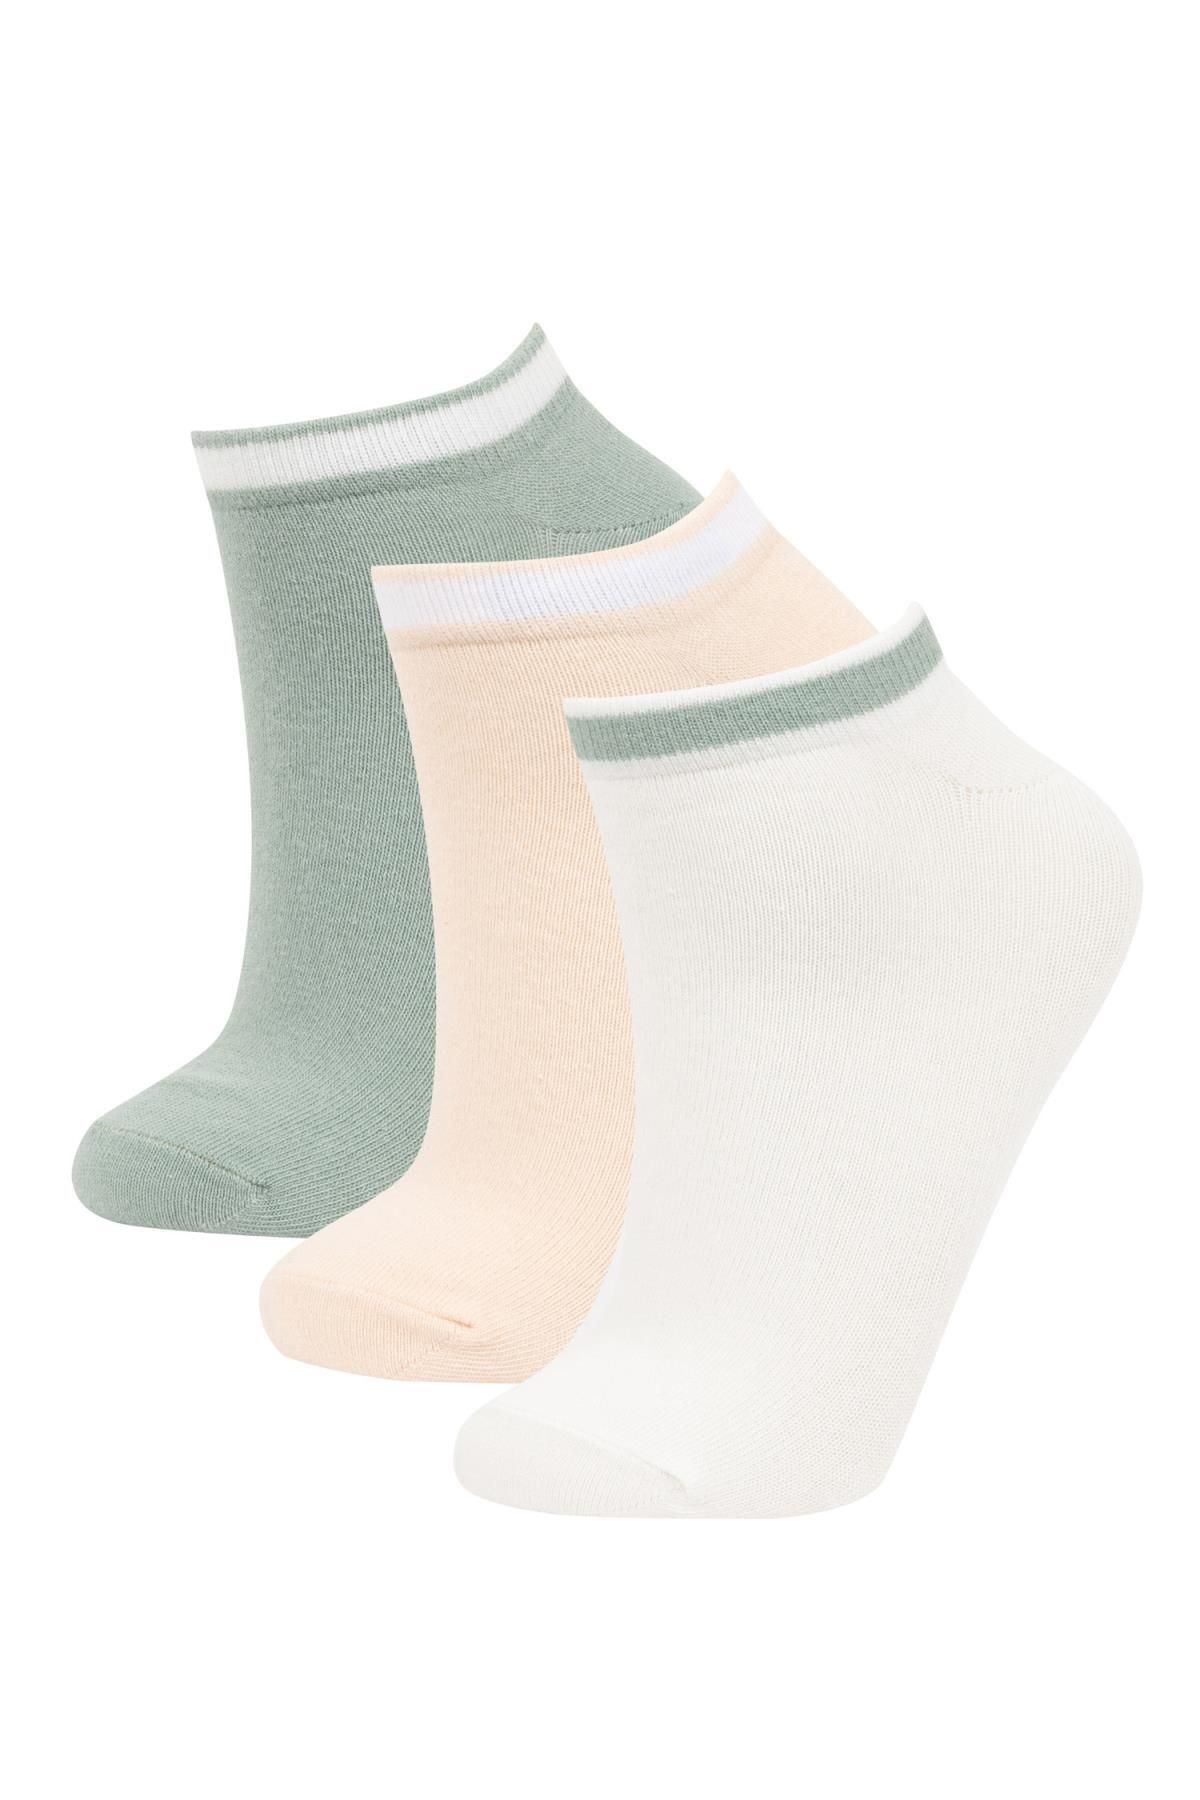 Defacto Kadın 3lü Pamuklu Patik Çorap B6028AXNS